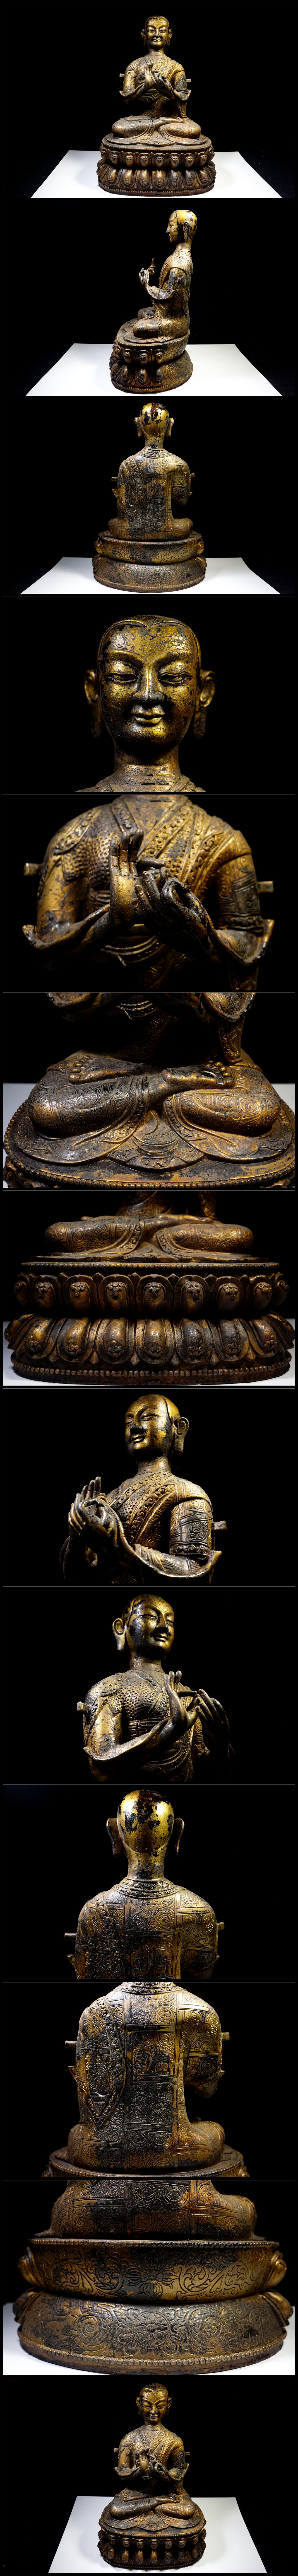 日本激安金銅細工 チベット仏教 大迫力活仏造像高彫 無銘 鎮宅 開運置物 極上質 仏像